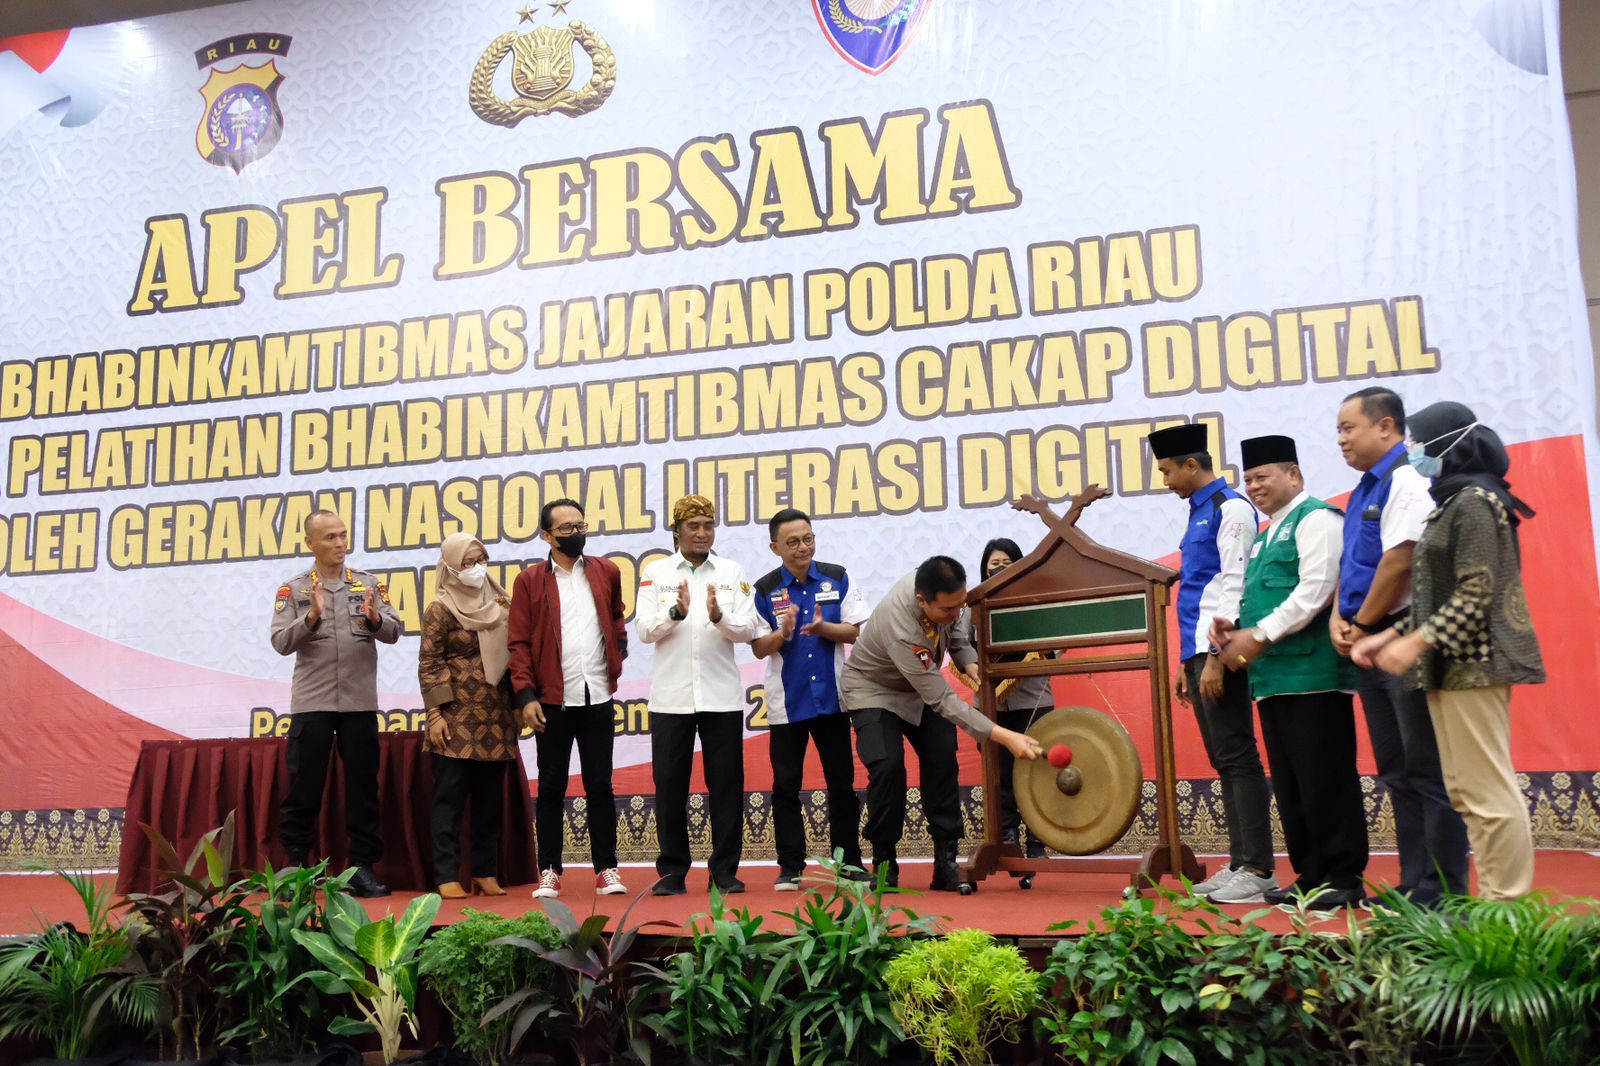 Gelar Pelatihan Cakap Digital, Kapolda Riau Irjen Iqbal : Kemampuan Teknis dan Literasi Digital Sangat Penting Dikuasai Bhabinkamtibmas.